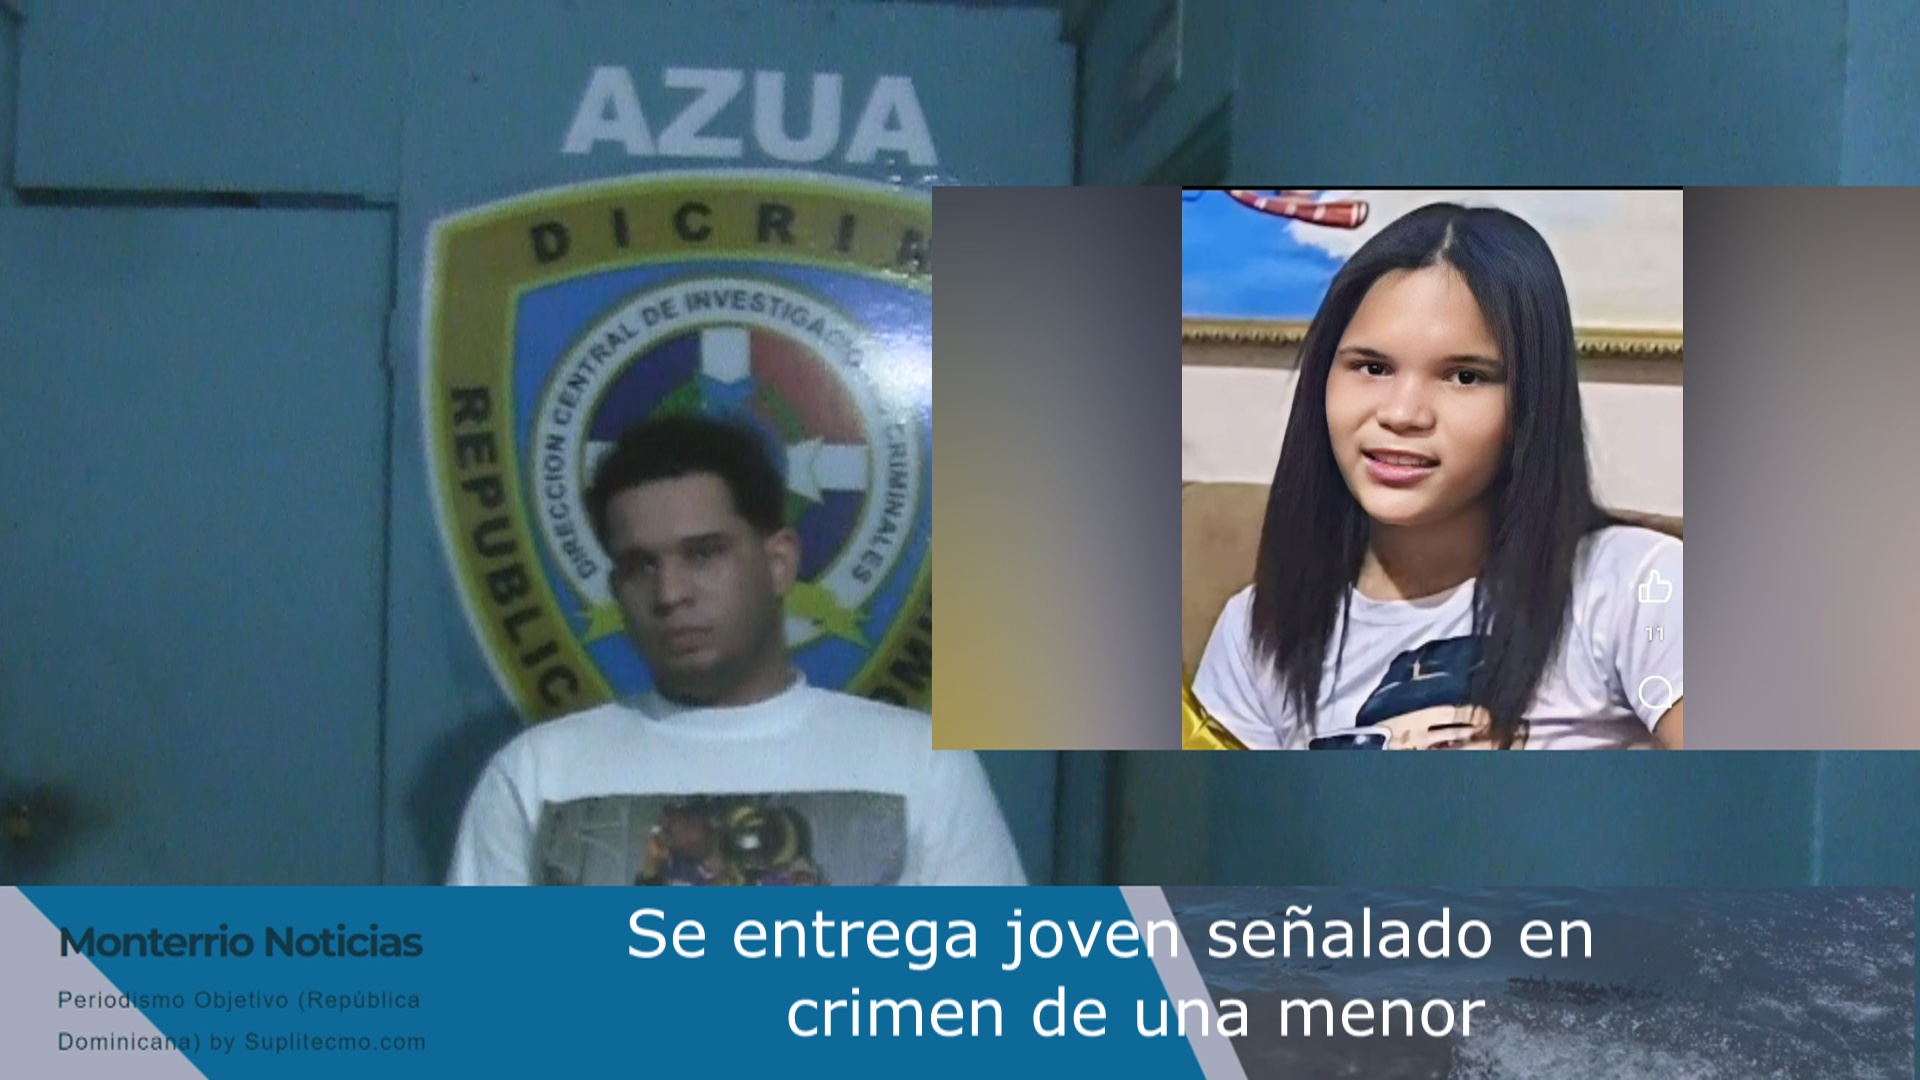 VIDEO: Segundo joven involucrado en muerte de menor en cabaña Azua dijo no fue quien la mató